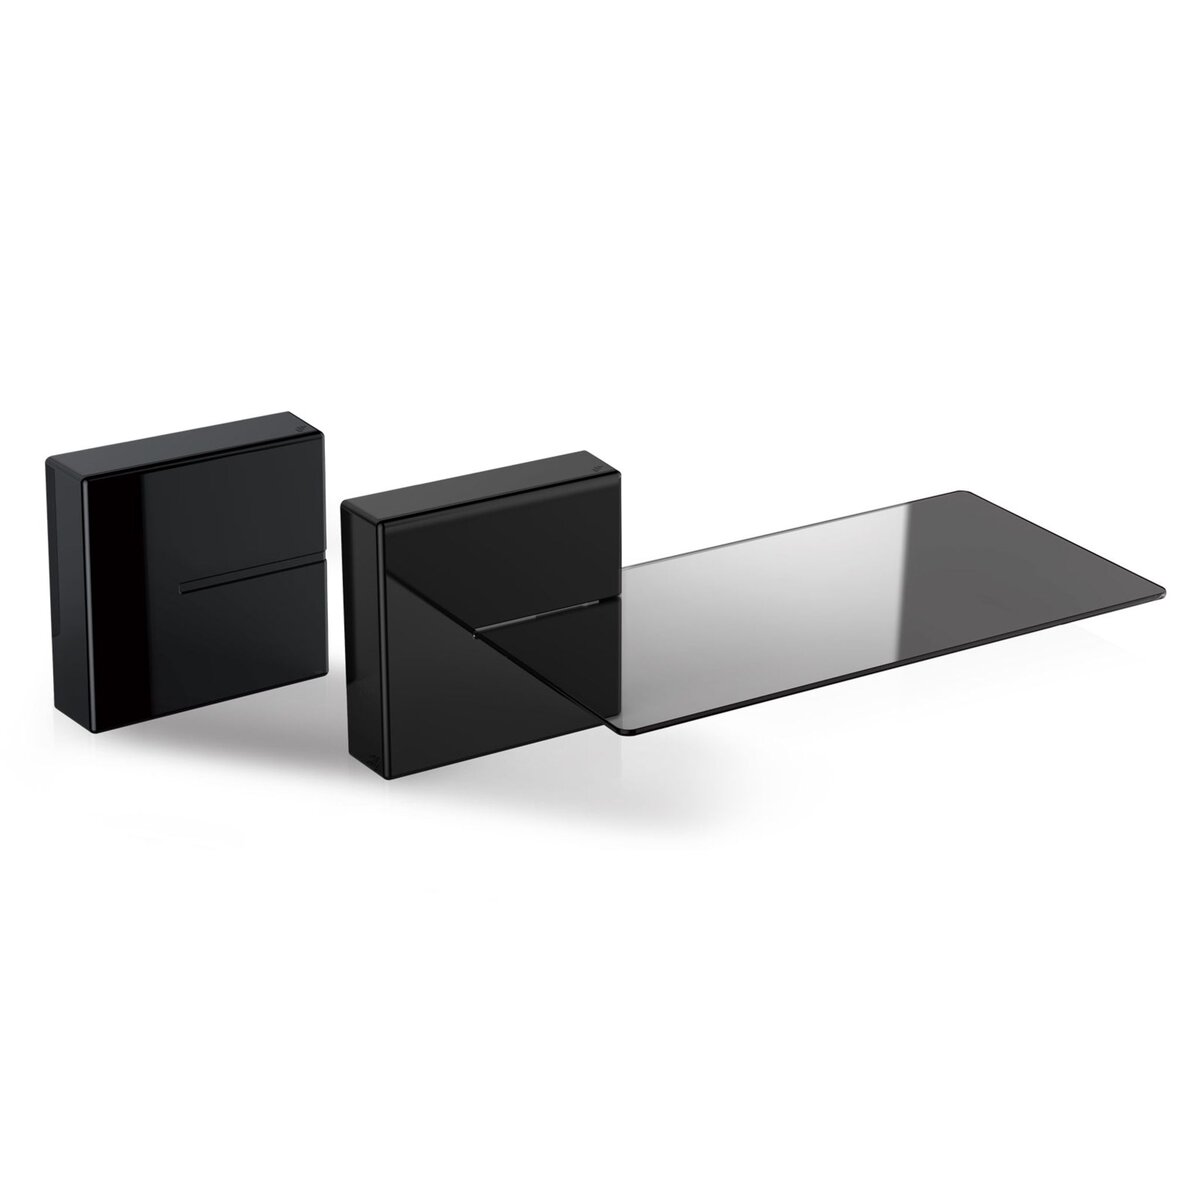 MELICONI Ghost Cube Shelf Système de gestion des câbles - Comprenant 1 cube et 1 étagère - Poids maximal supporté 3 Kg - Noir